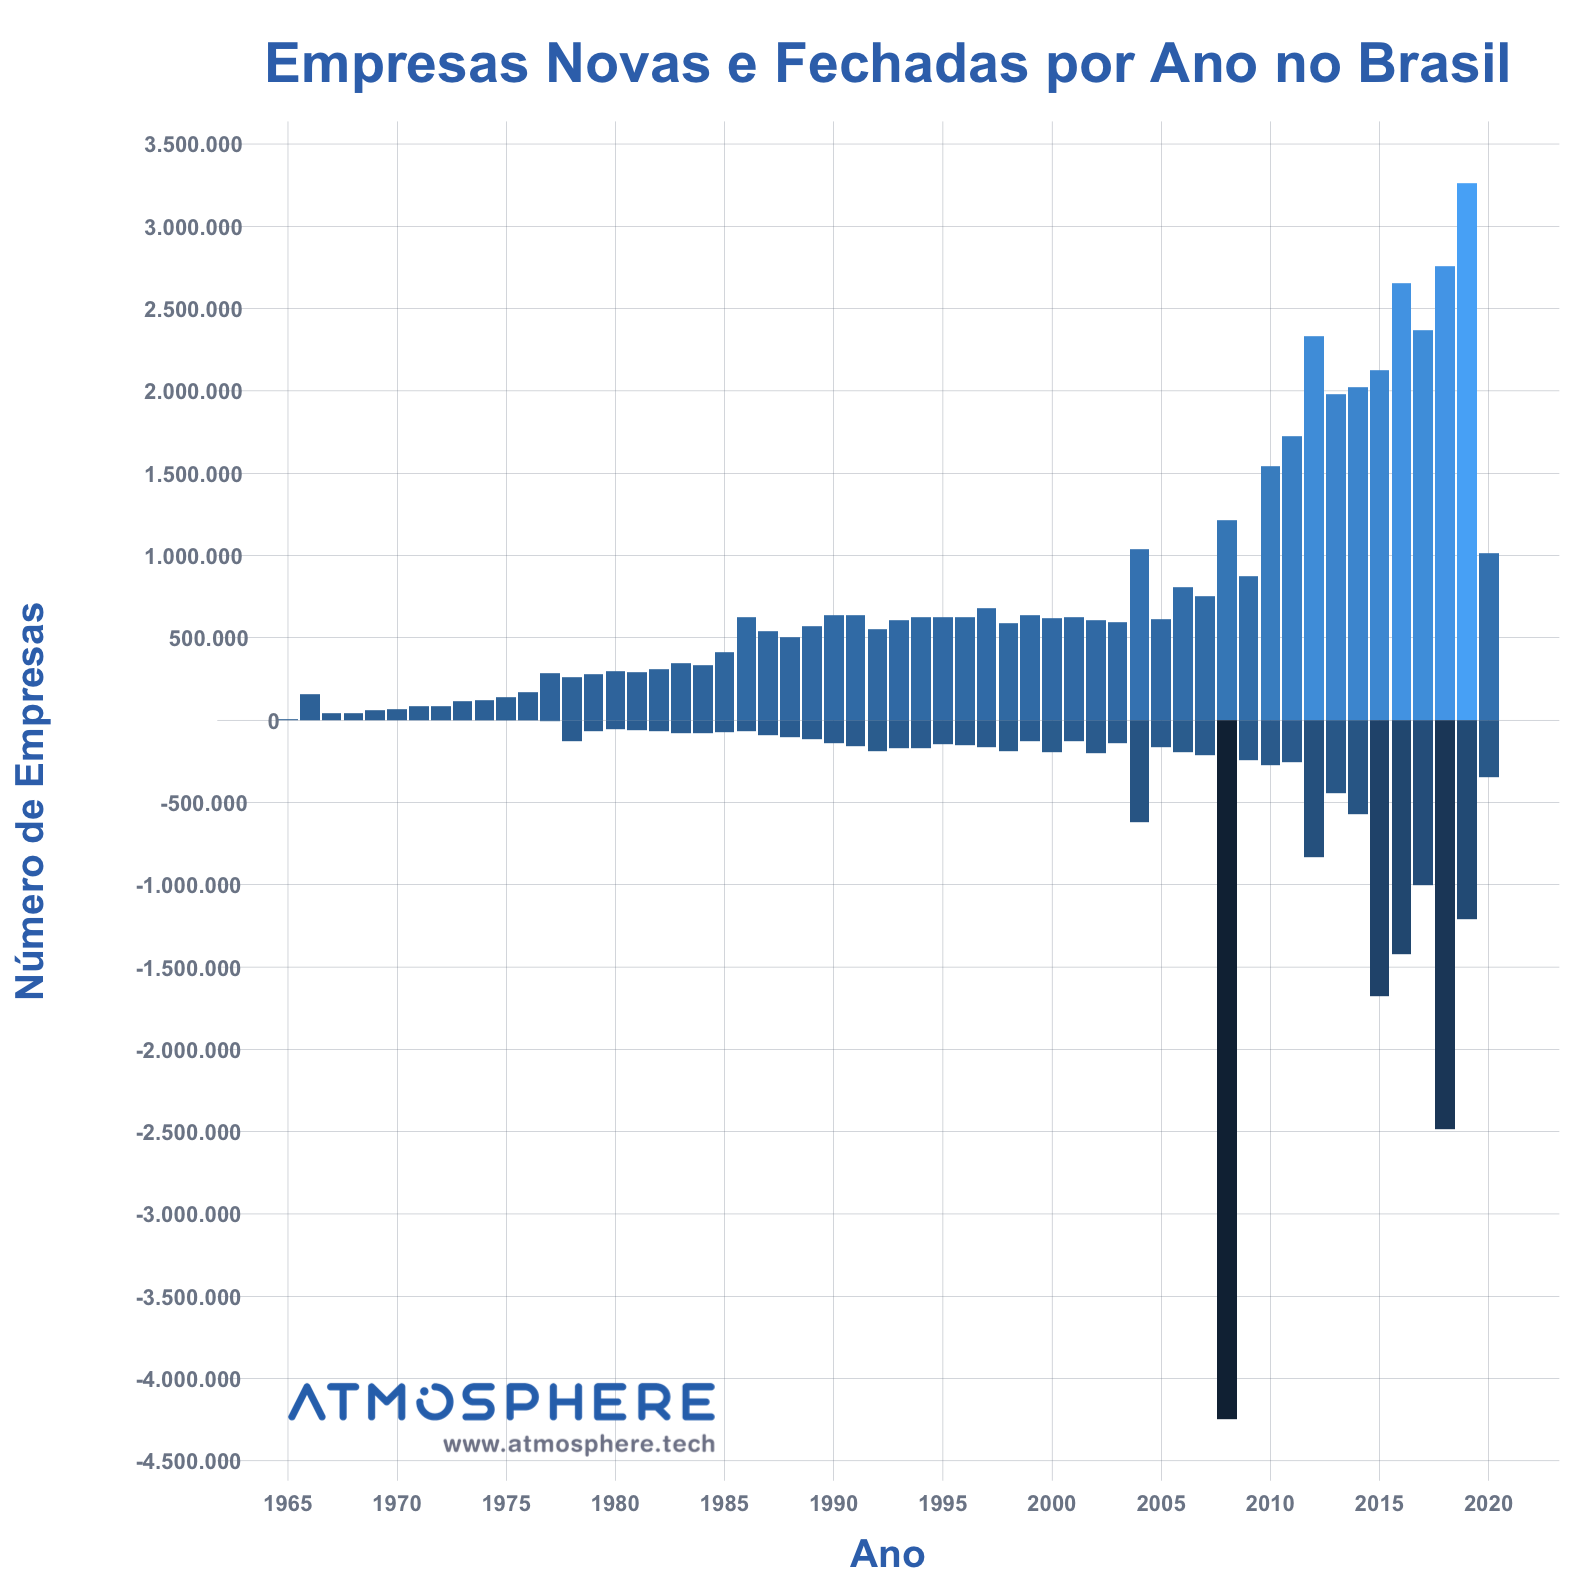 Atmosphere Empresas Novas e Fechadas por Ano no Brasil